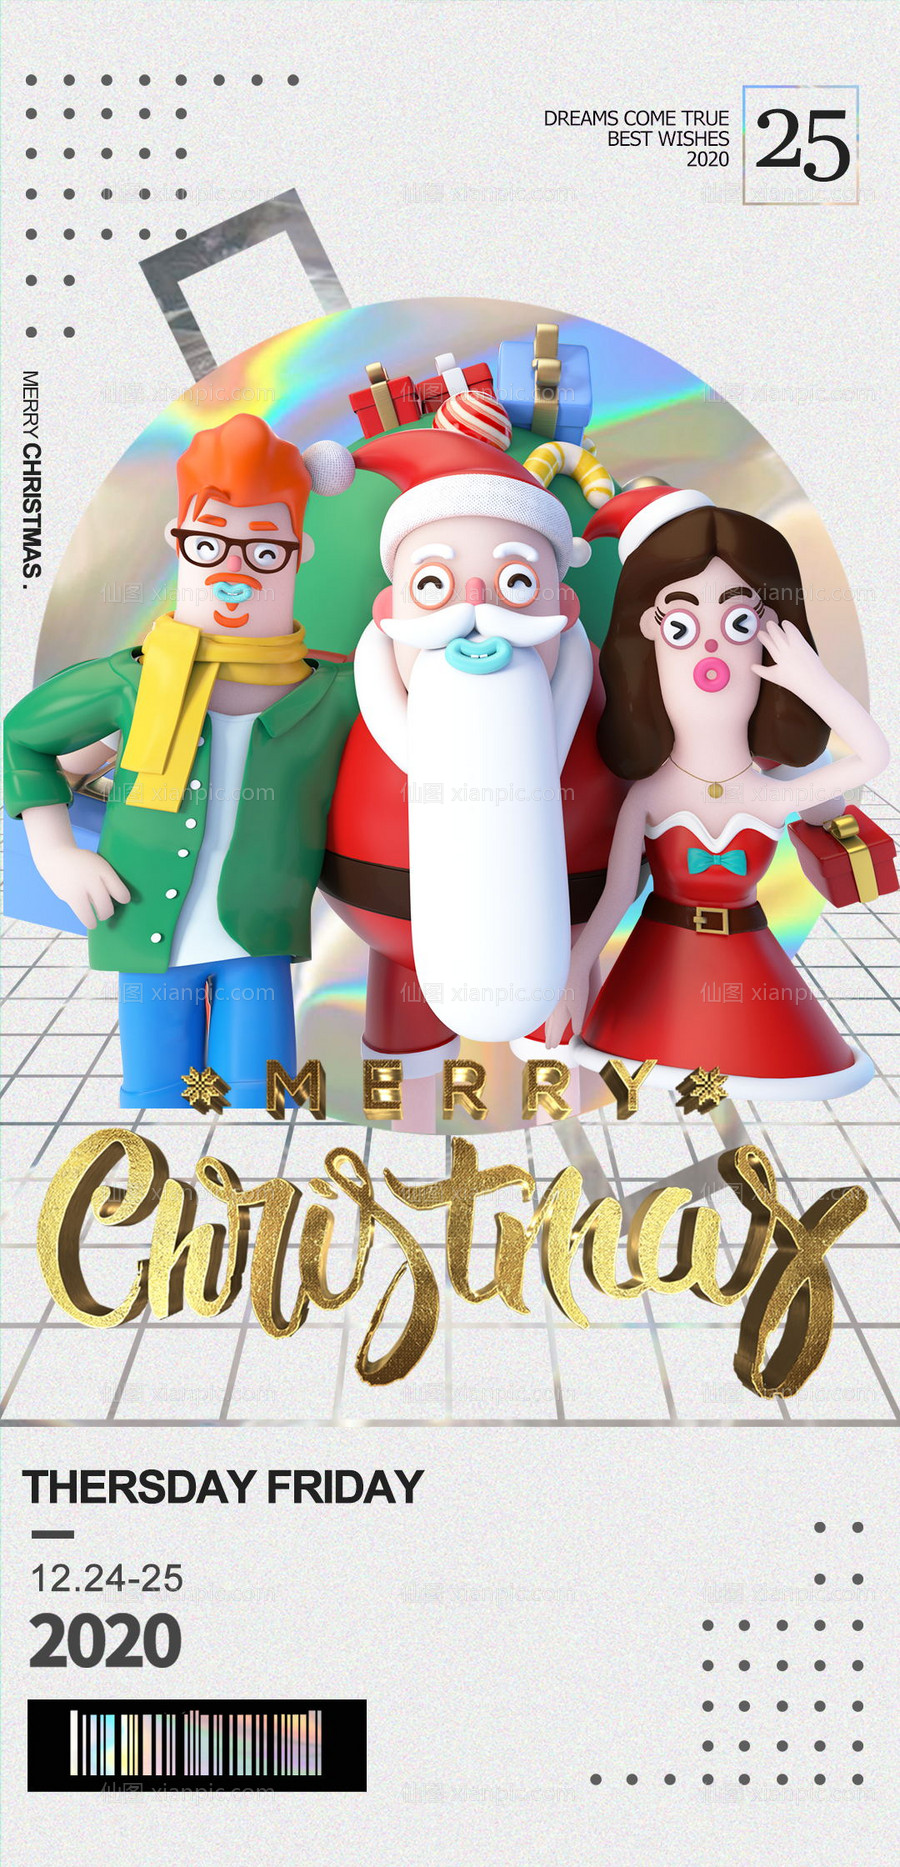 素材乐-圣诞节酒吧海报